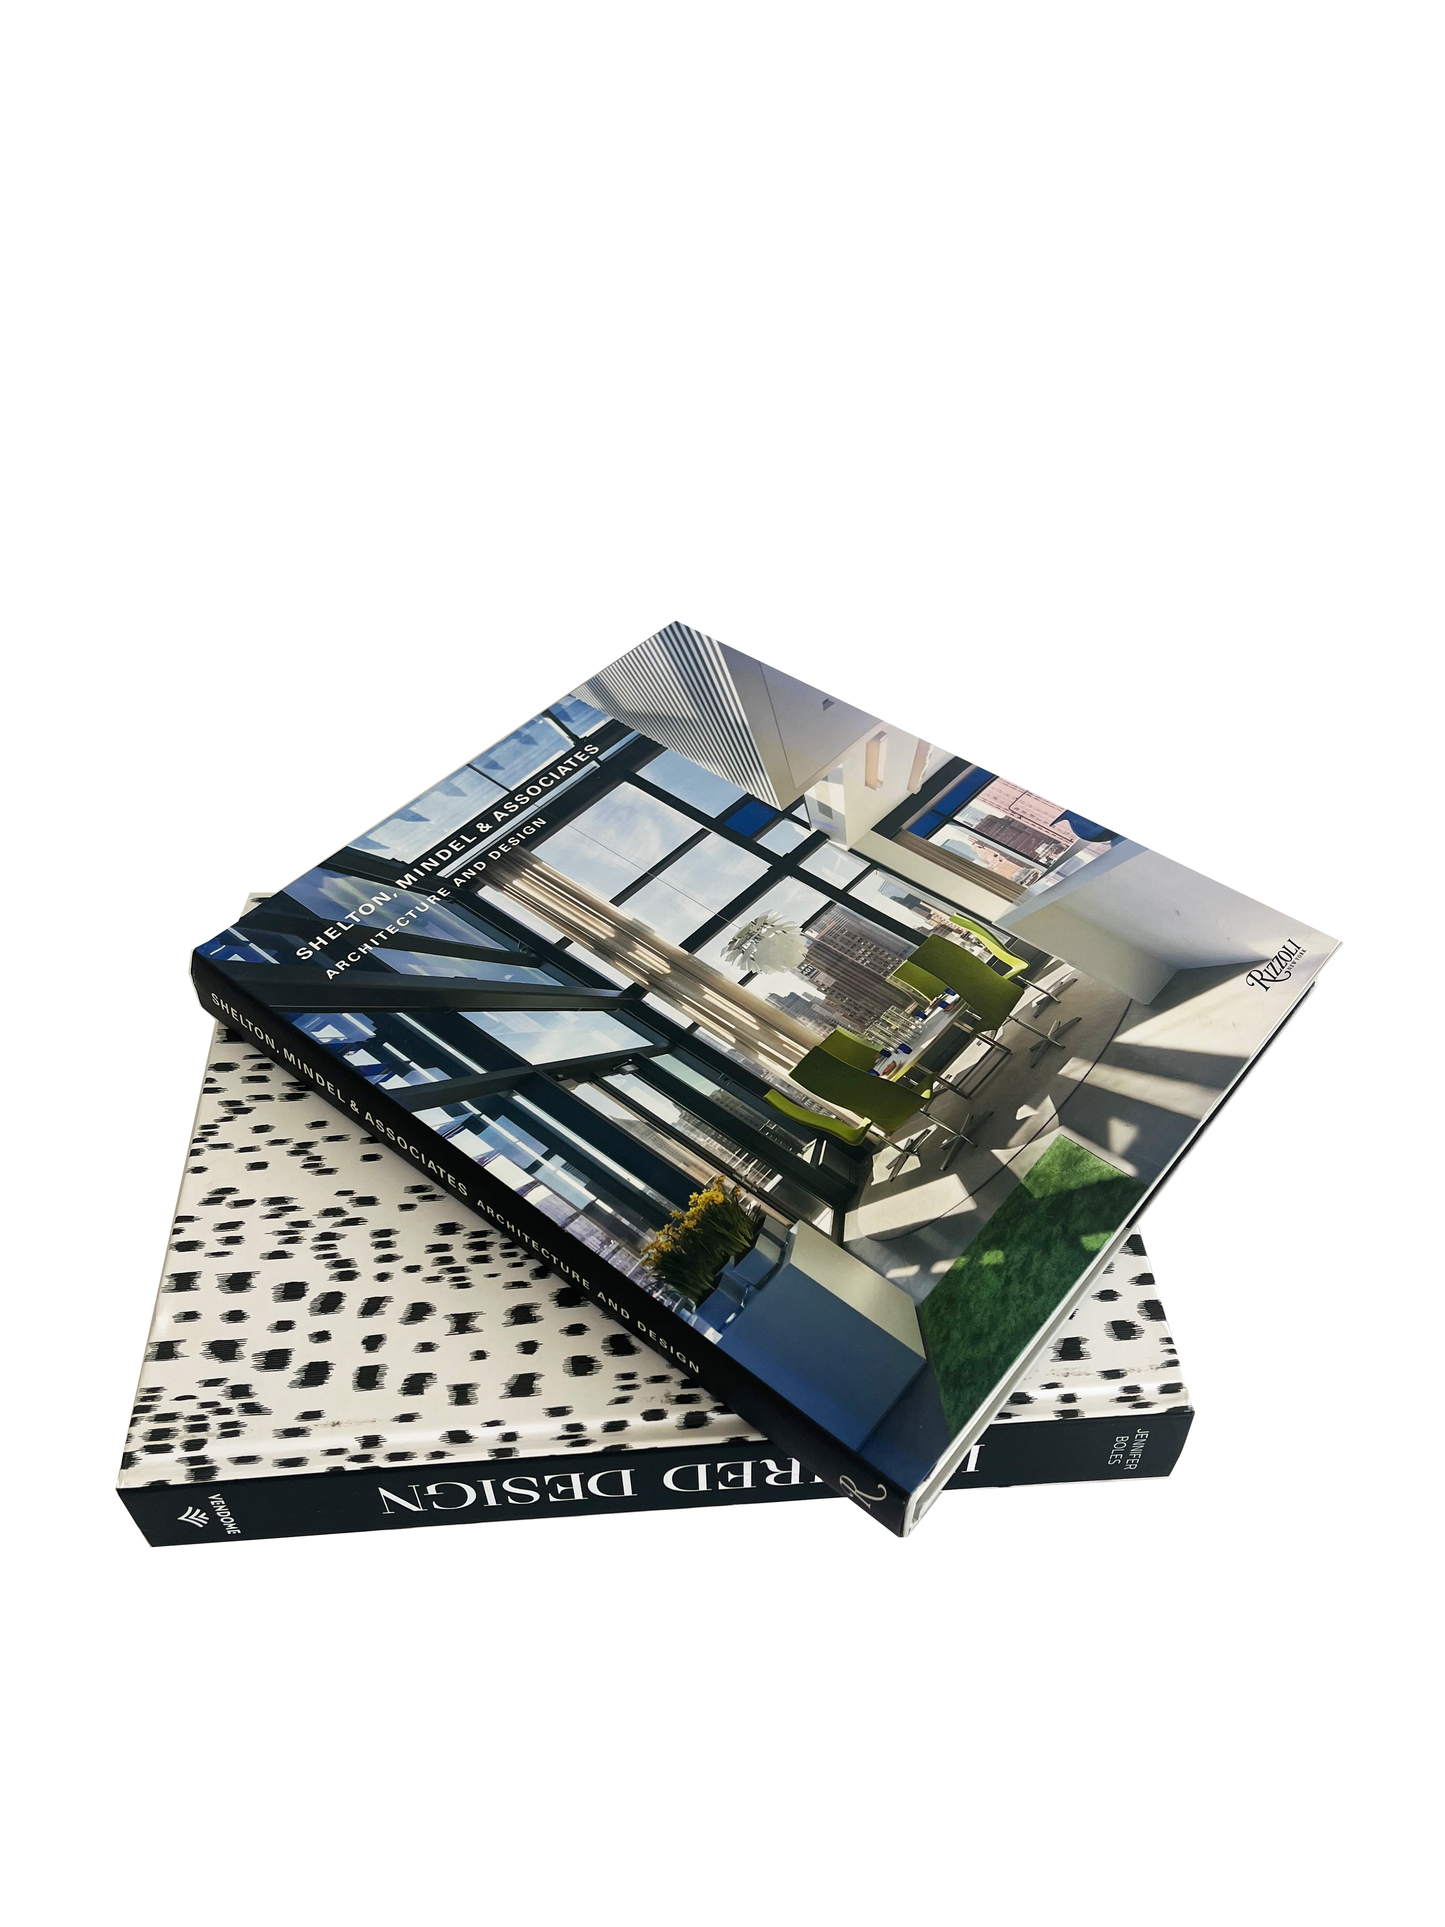 "Architecture and Design" Book